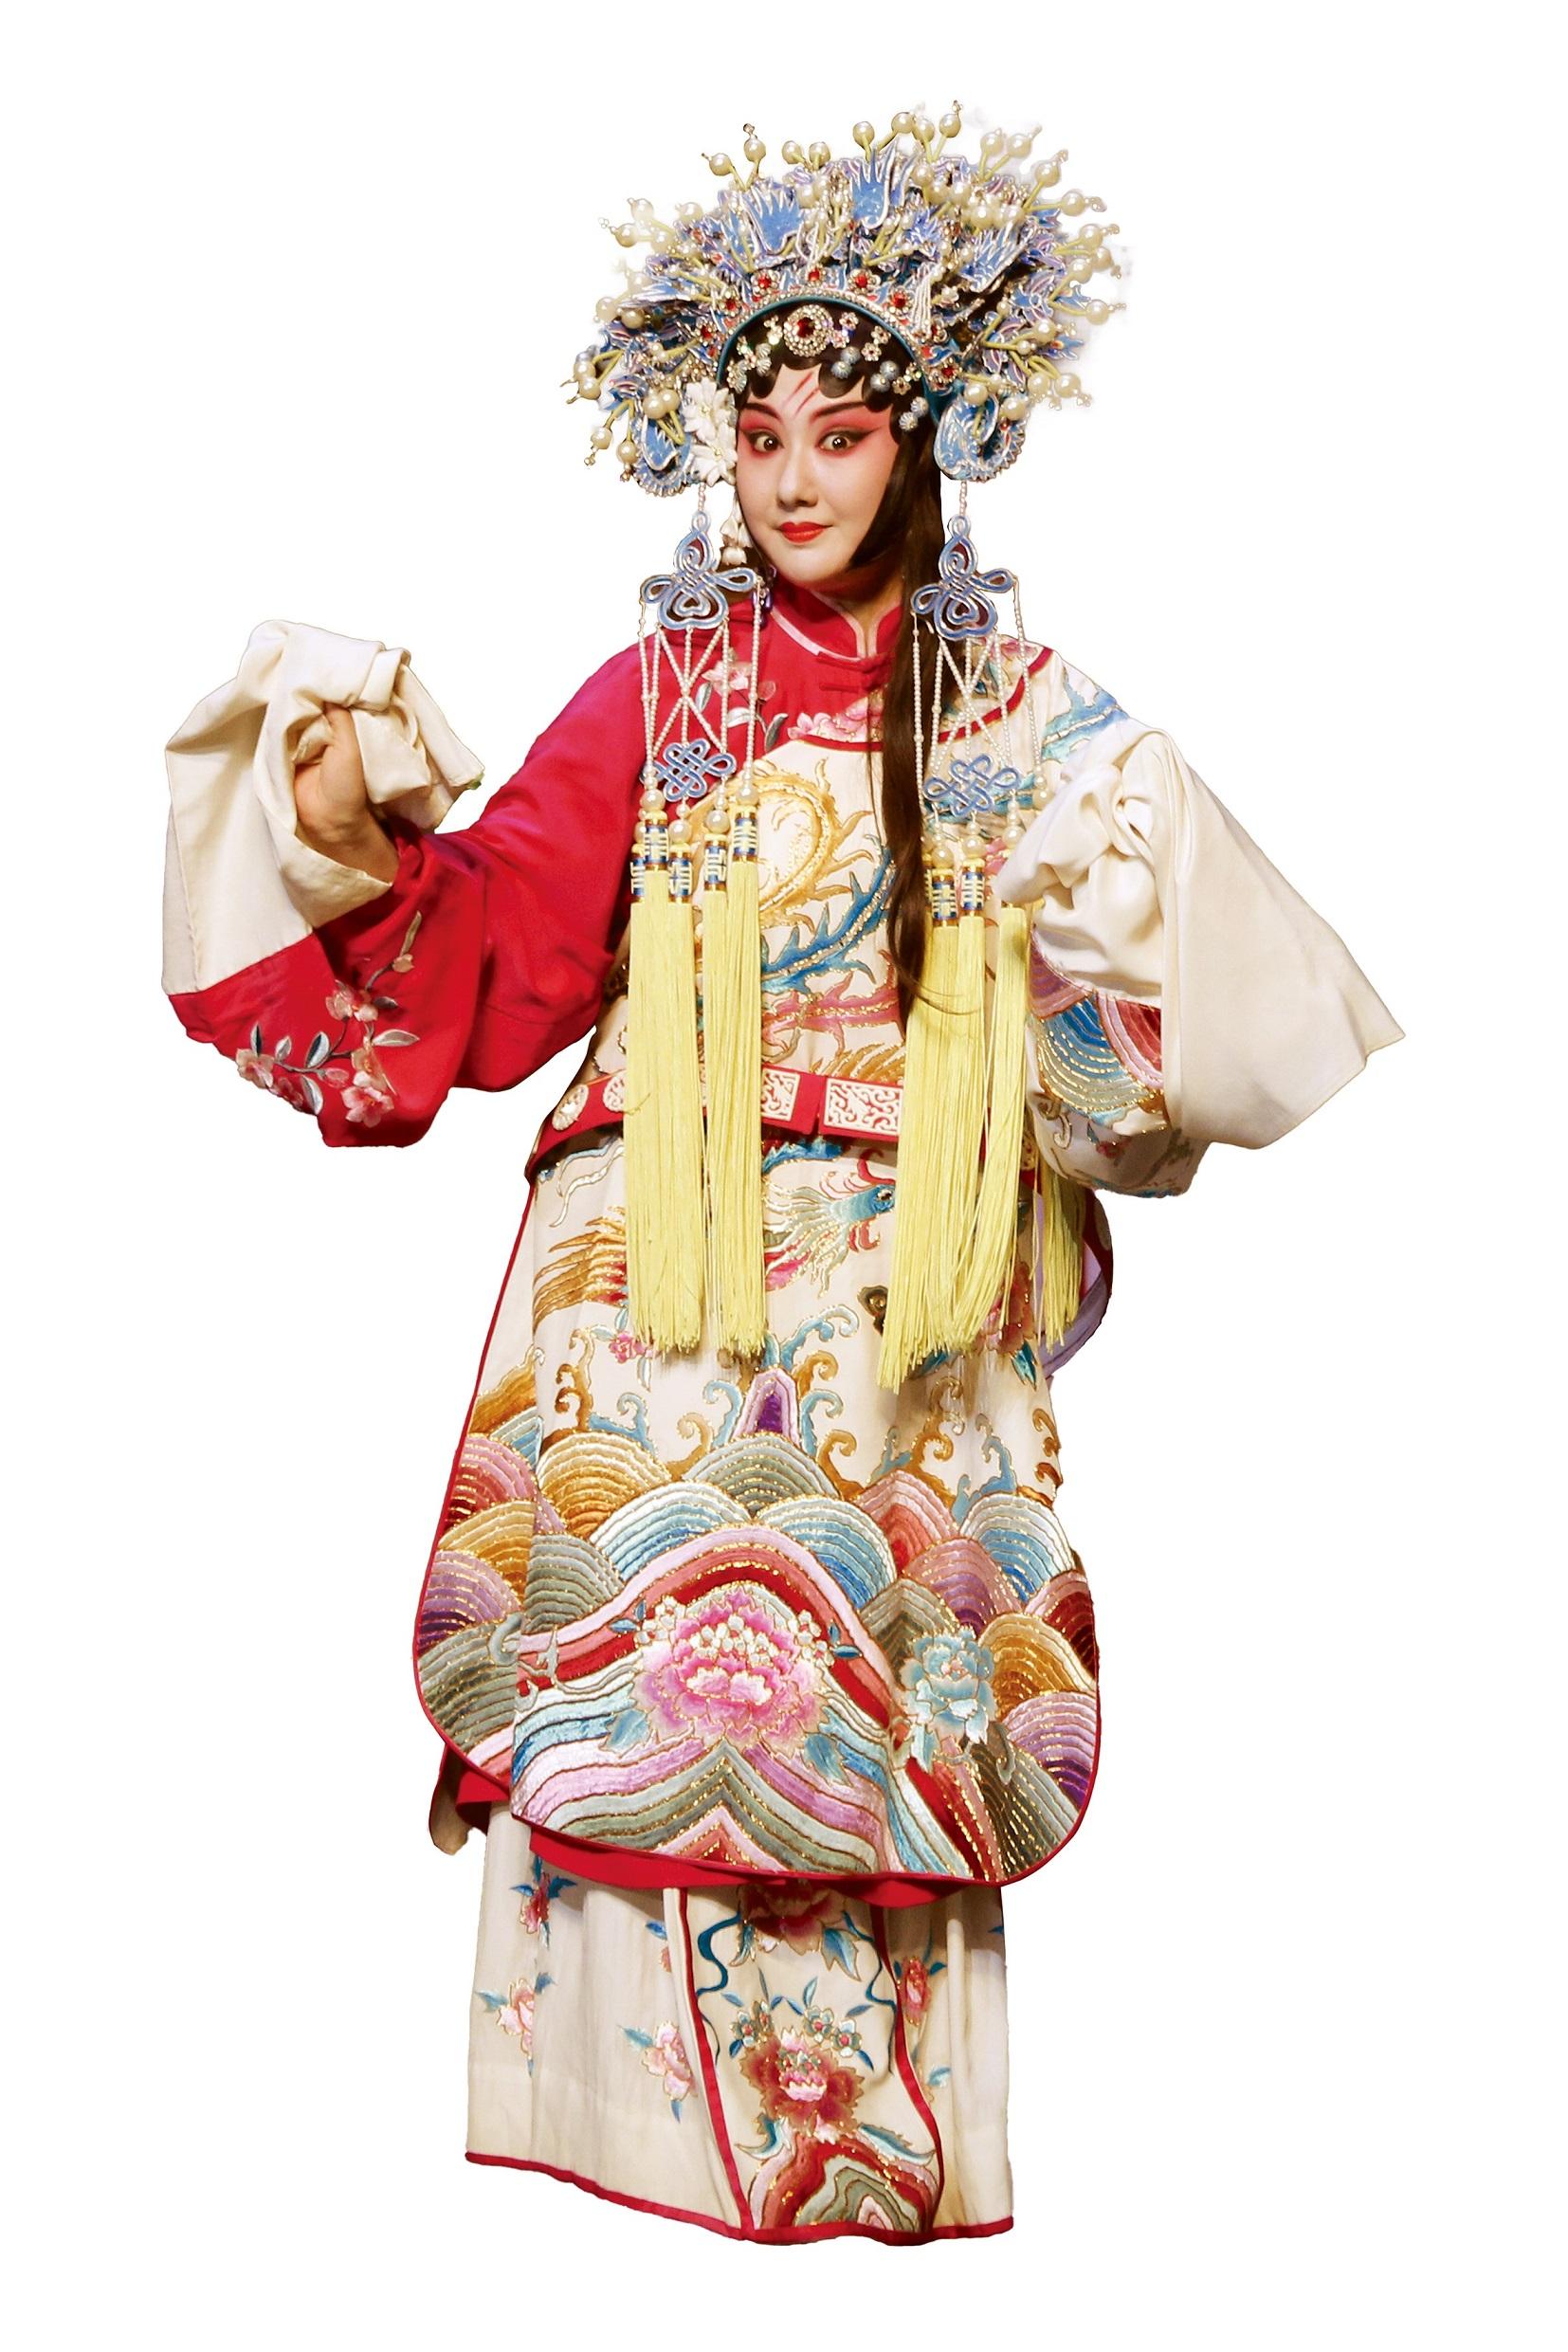 由康乐及文化事务署主办的中国戏曲节（戏曲节）今年于六月至十月期间带来高水平戏曲节目。图为中国戏剧梅花奬得主王荔，她将随武汉汉剧院剧组赴港于戏曲节演出。